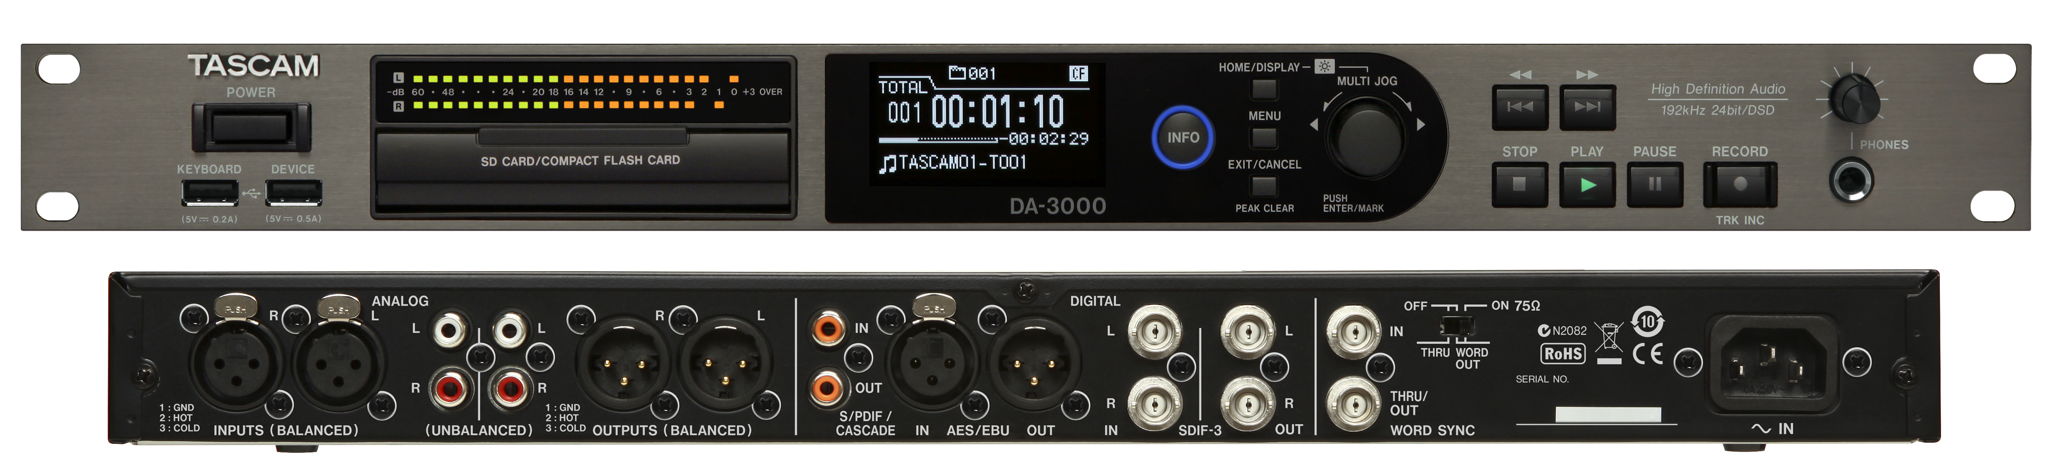 Tascam DA-3000 Stereo Master Recorder and ADDA Converter 9